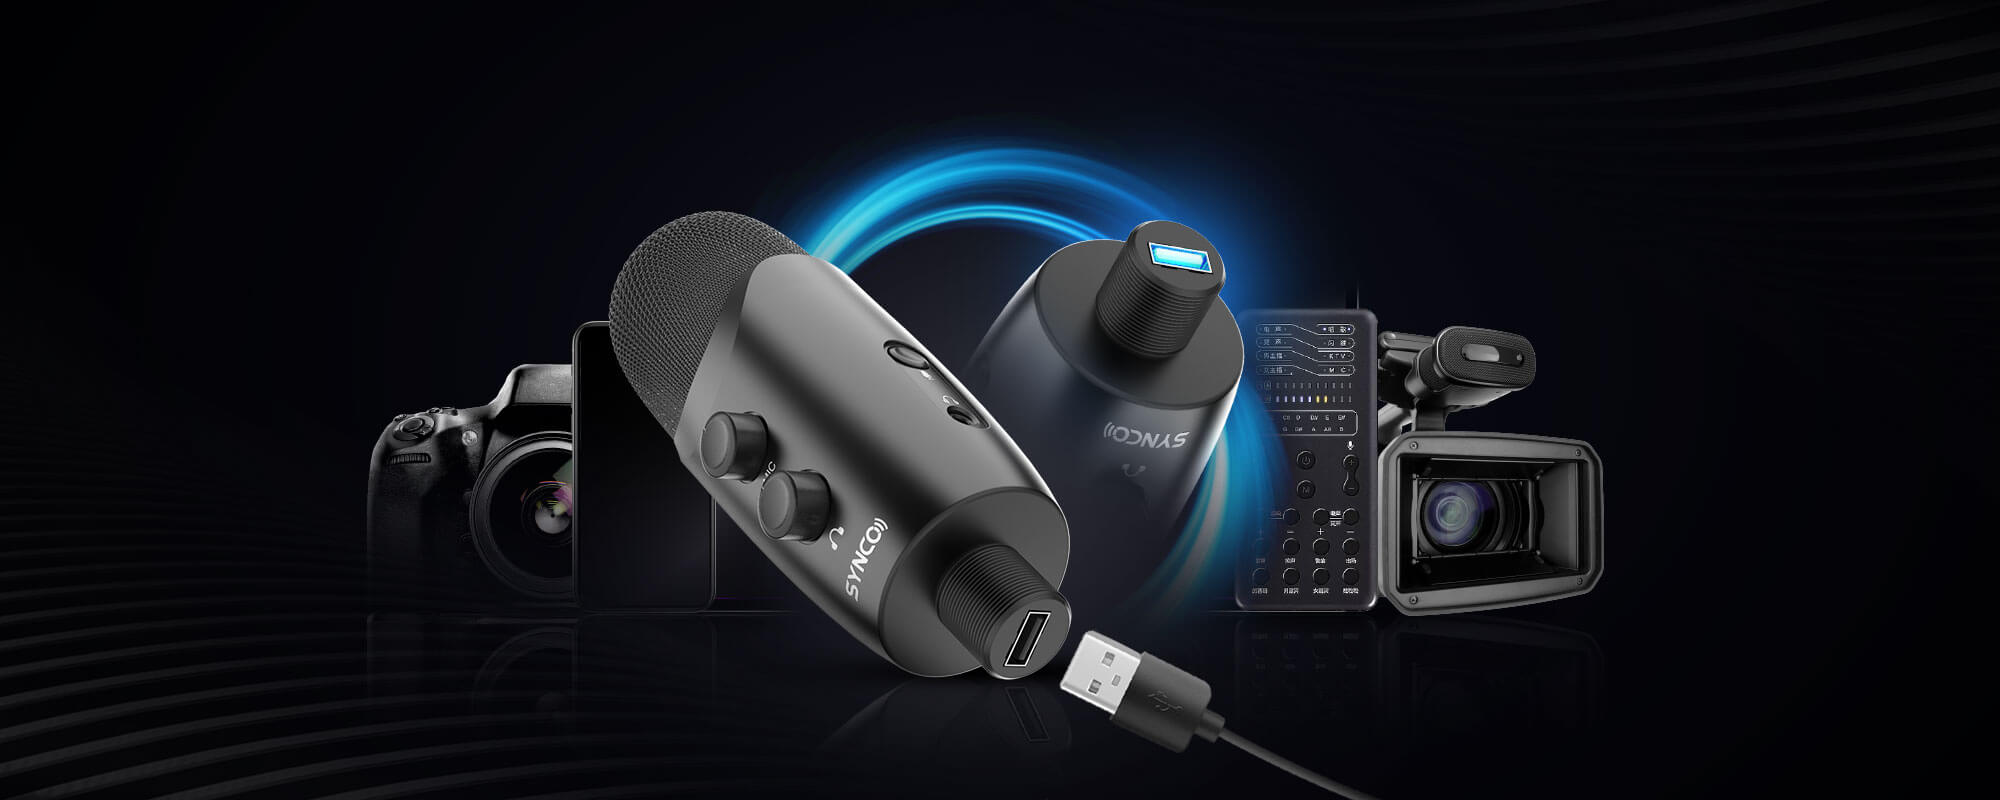 SYNCO | Professional Condenser Microphone SYNCO V2